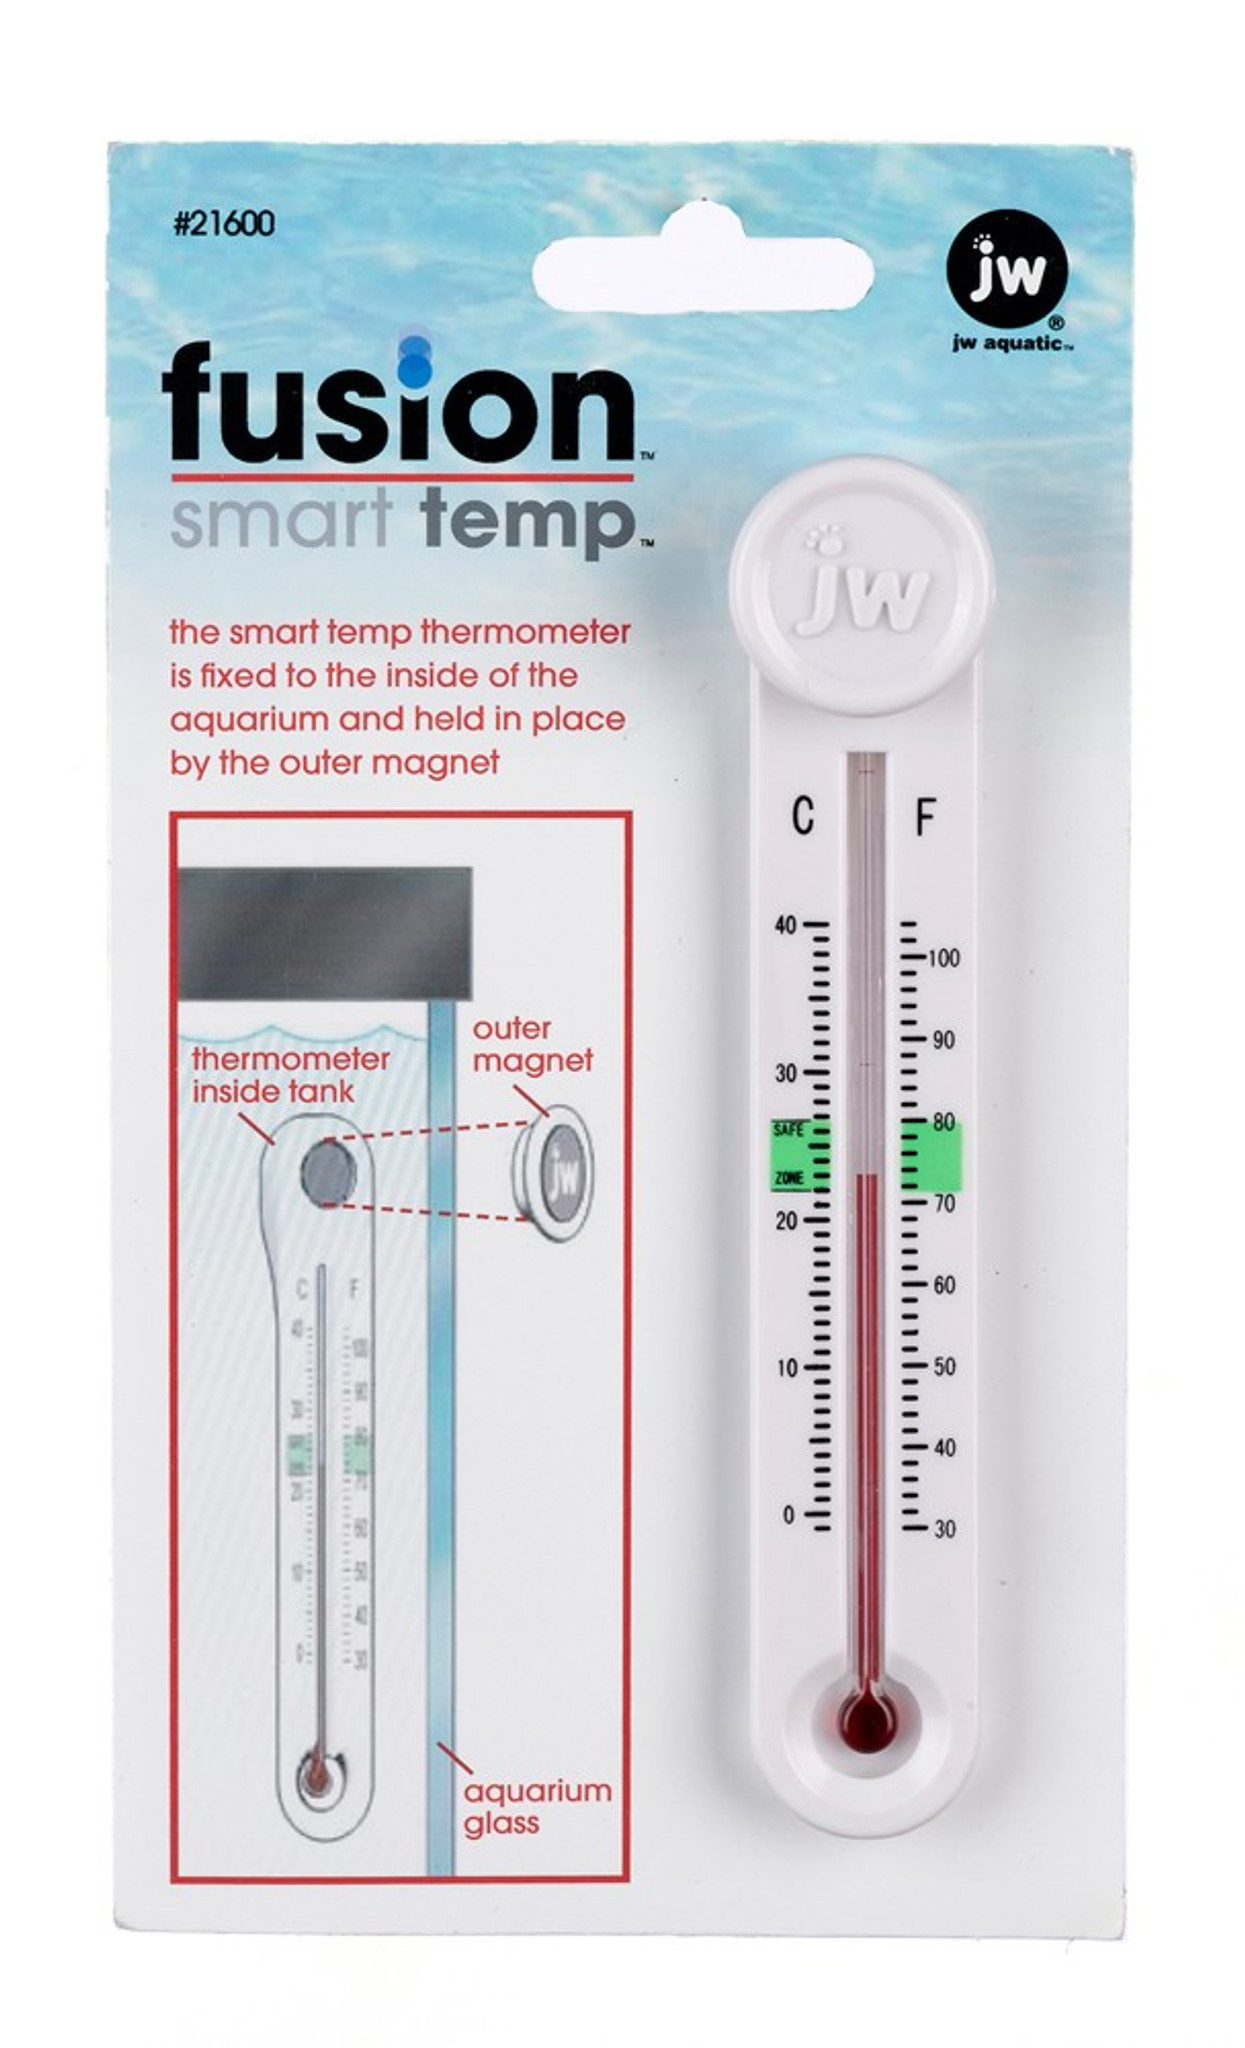 Imagitarium Standing Aquarium Thermometer